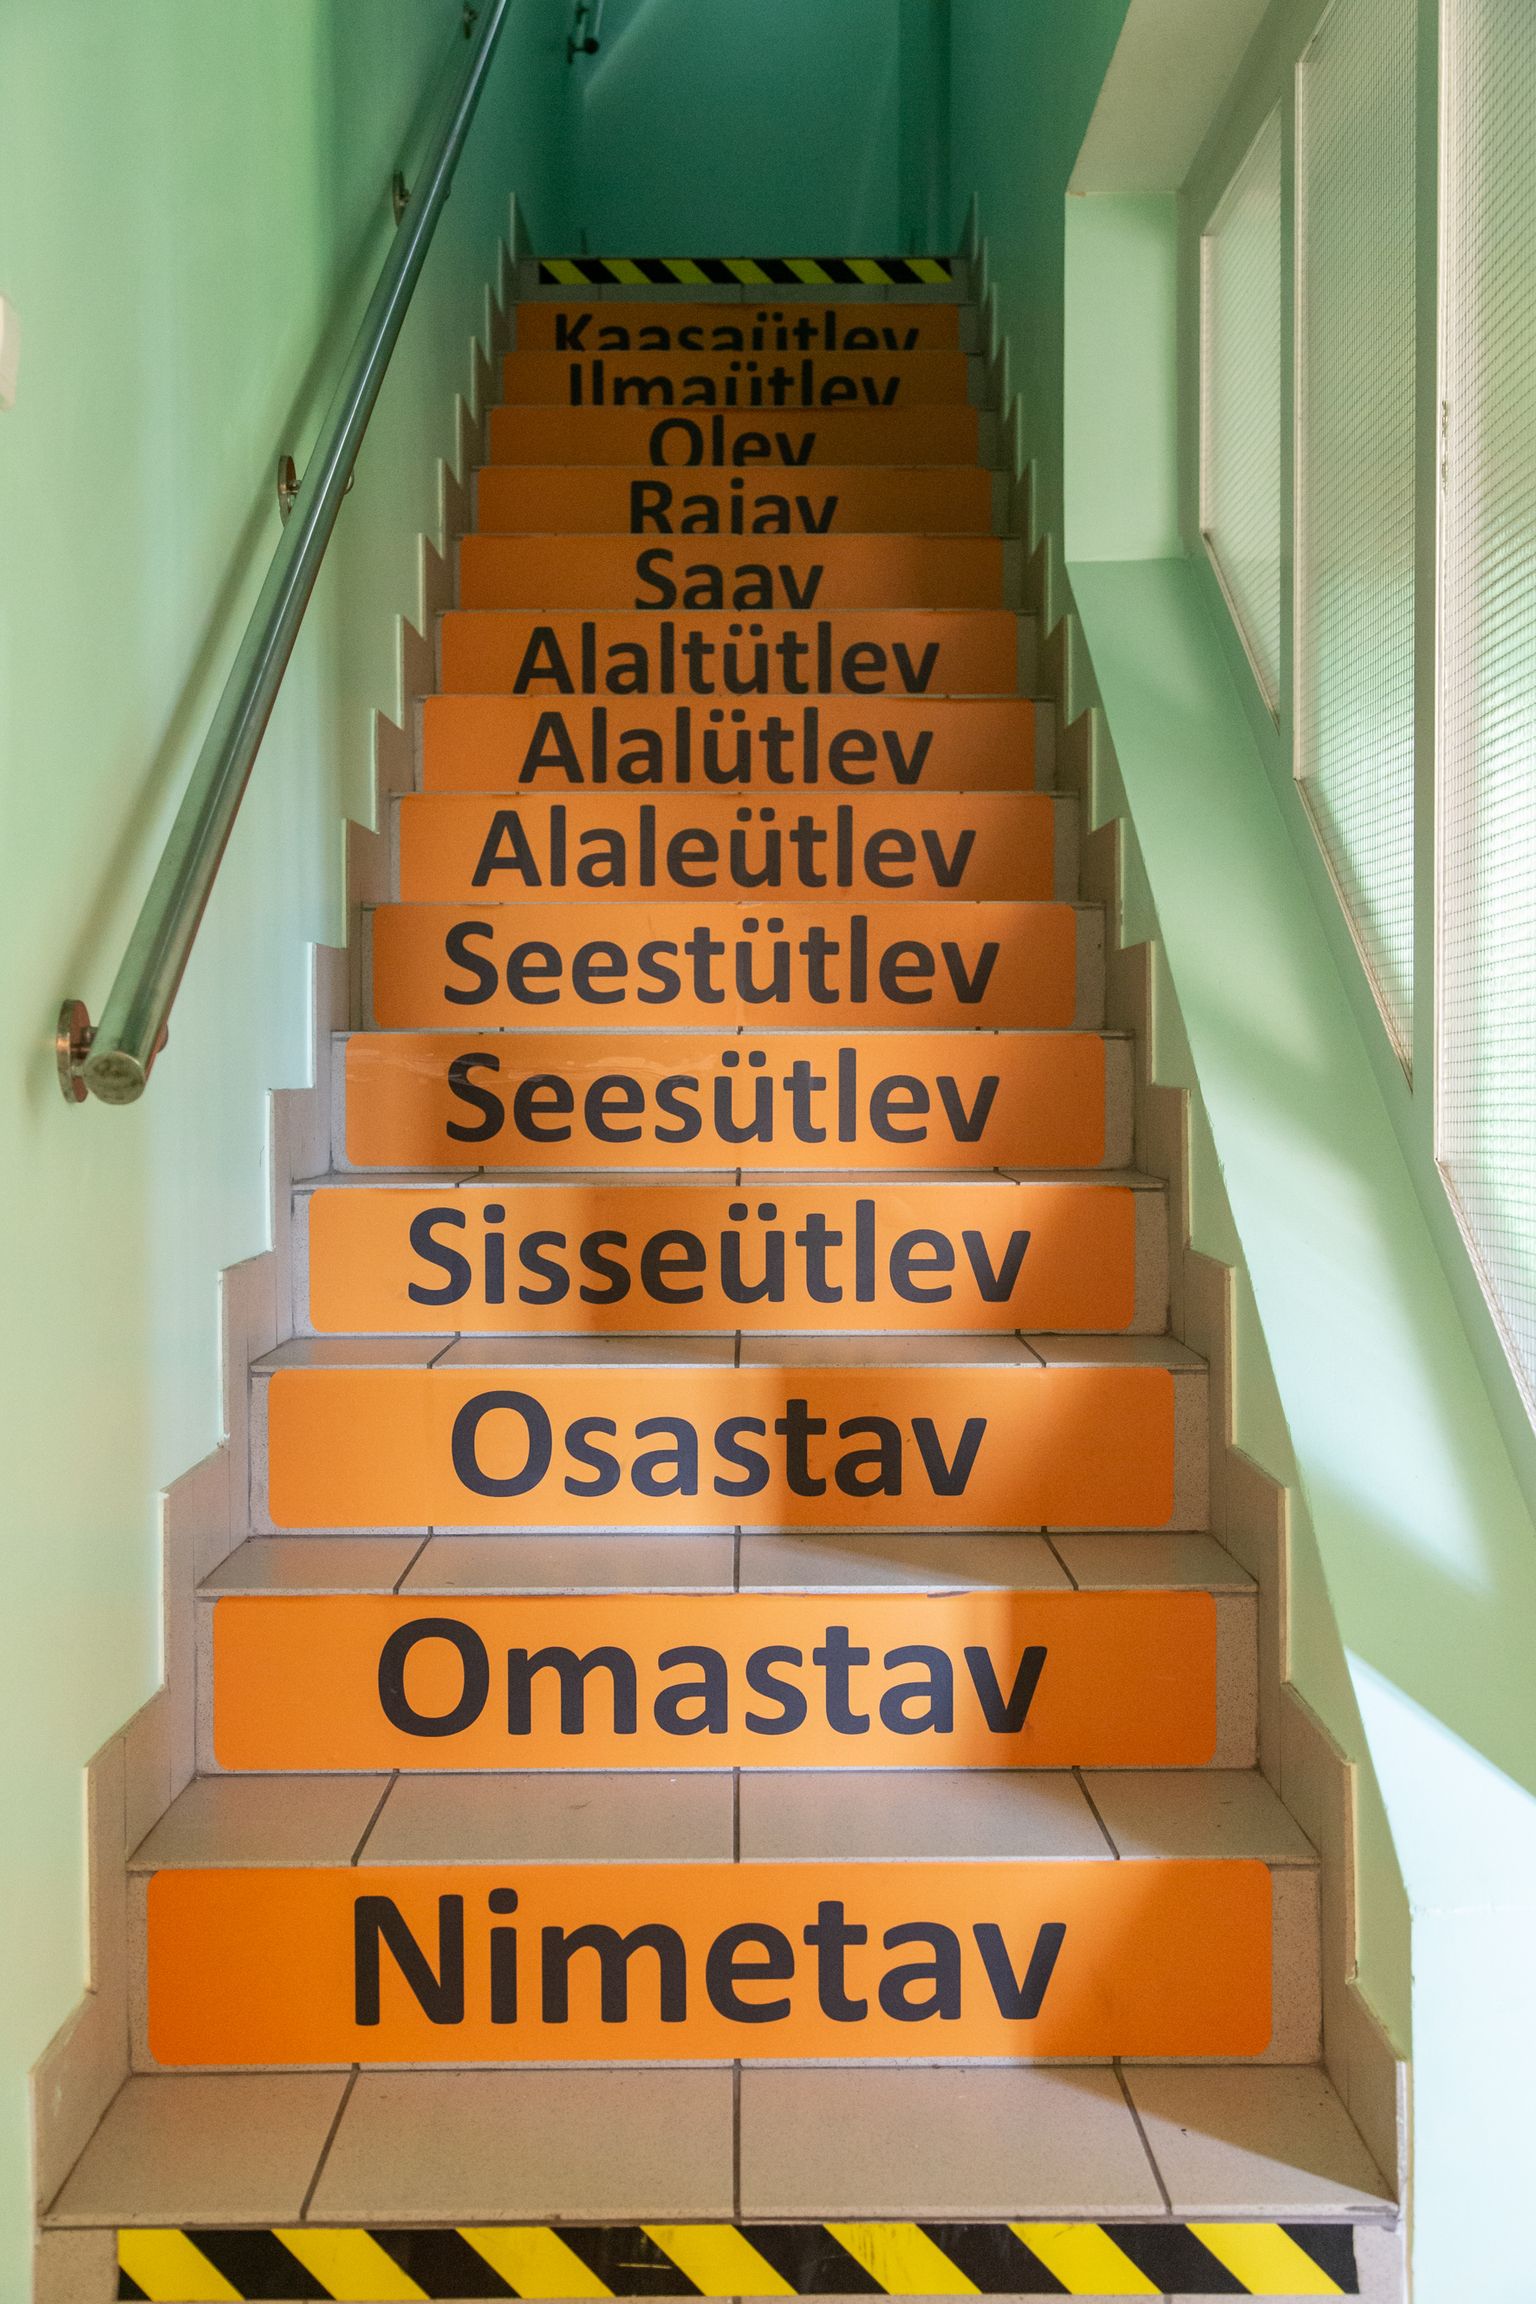 Лестница эстонского языка в Иллукаской школе.